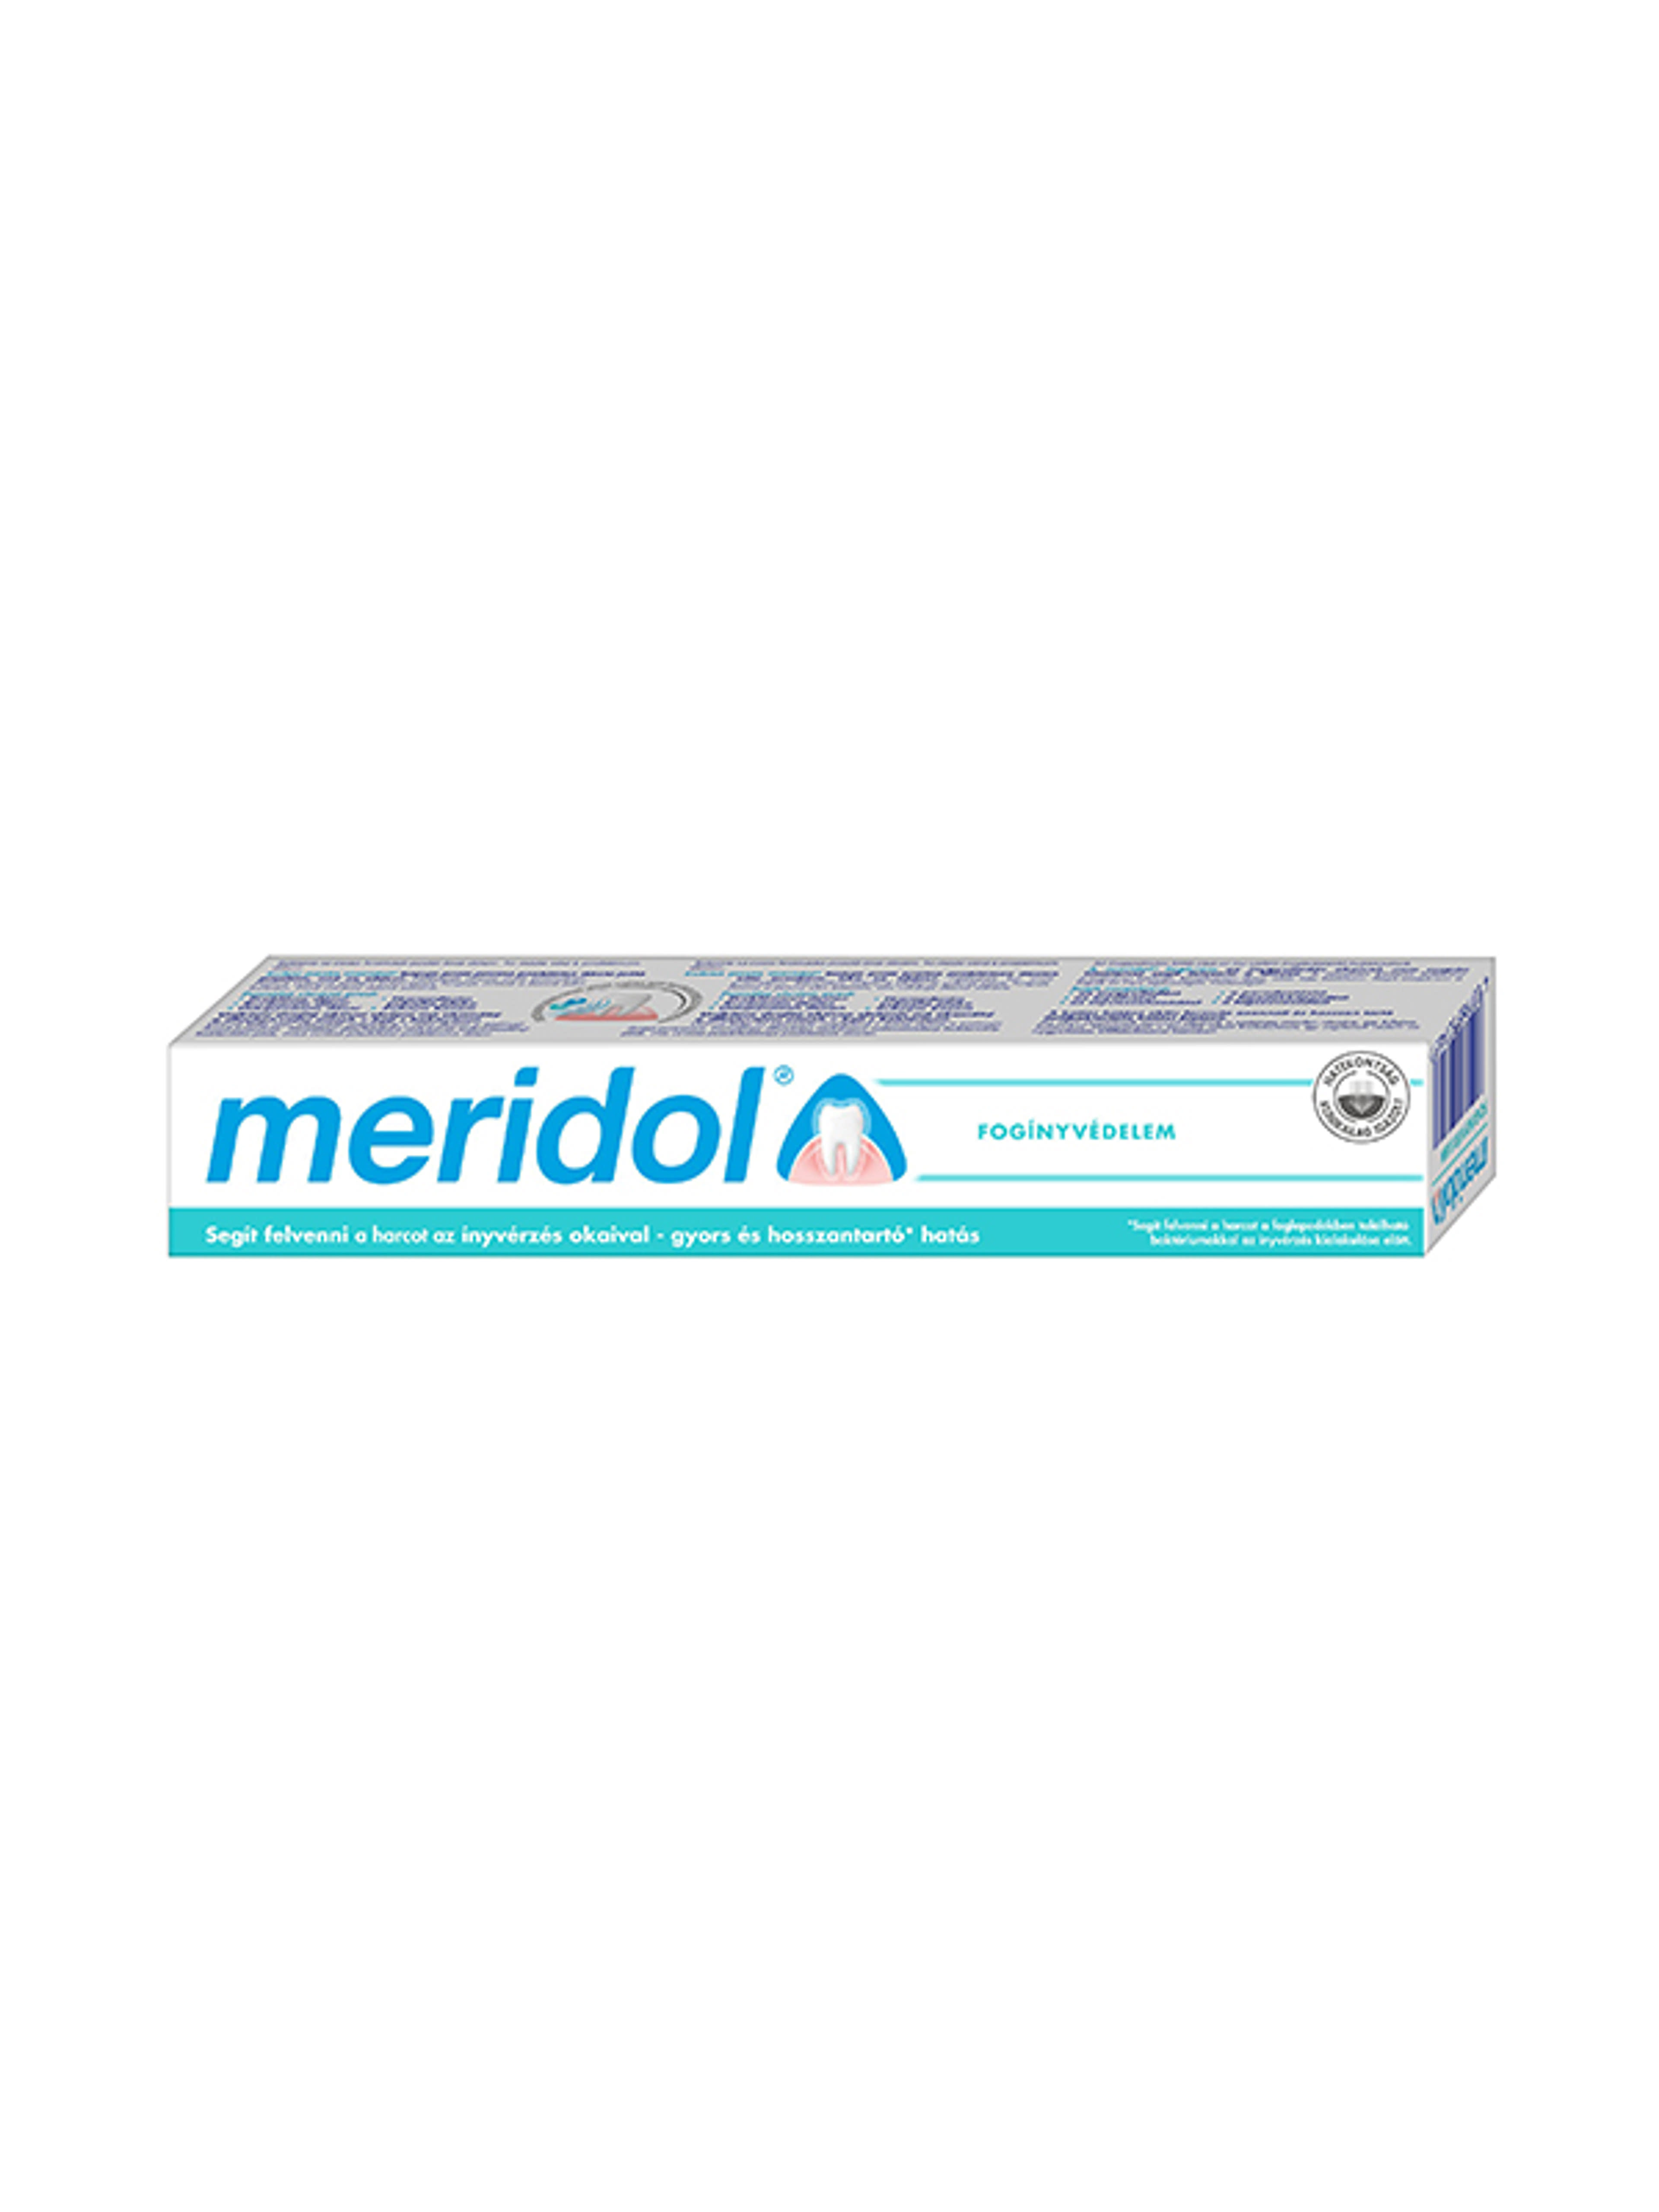 Meridol Fogínyvédelem fogkrém - 75 ml-4